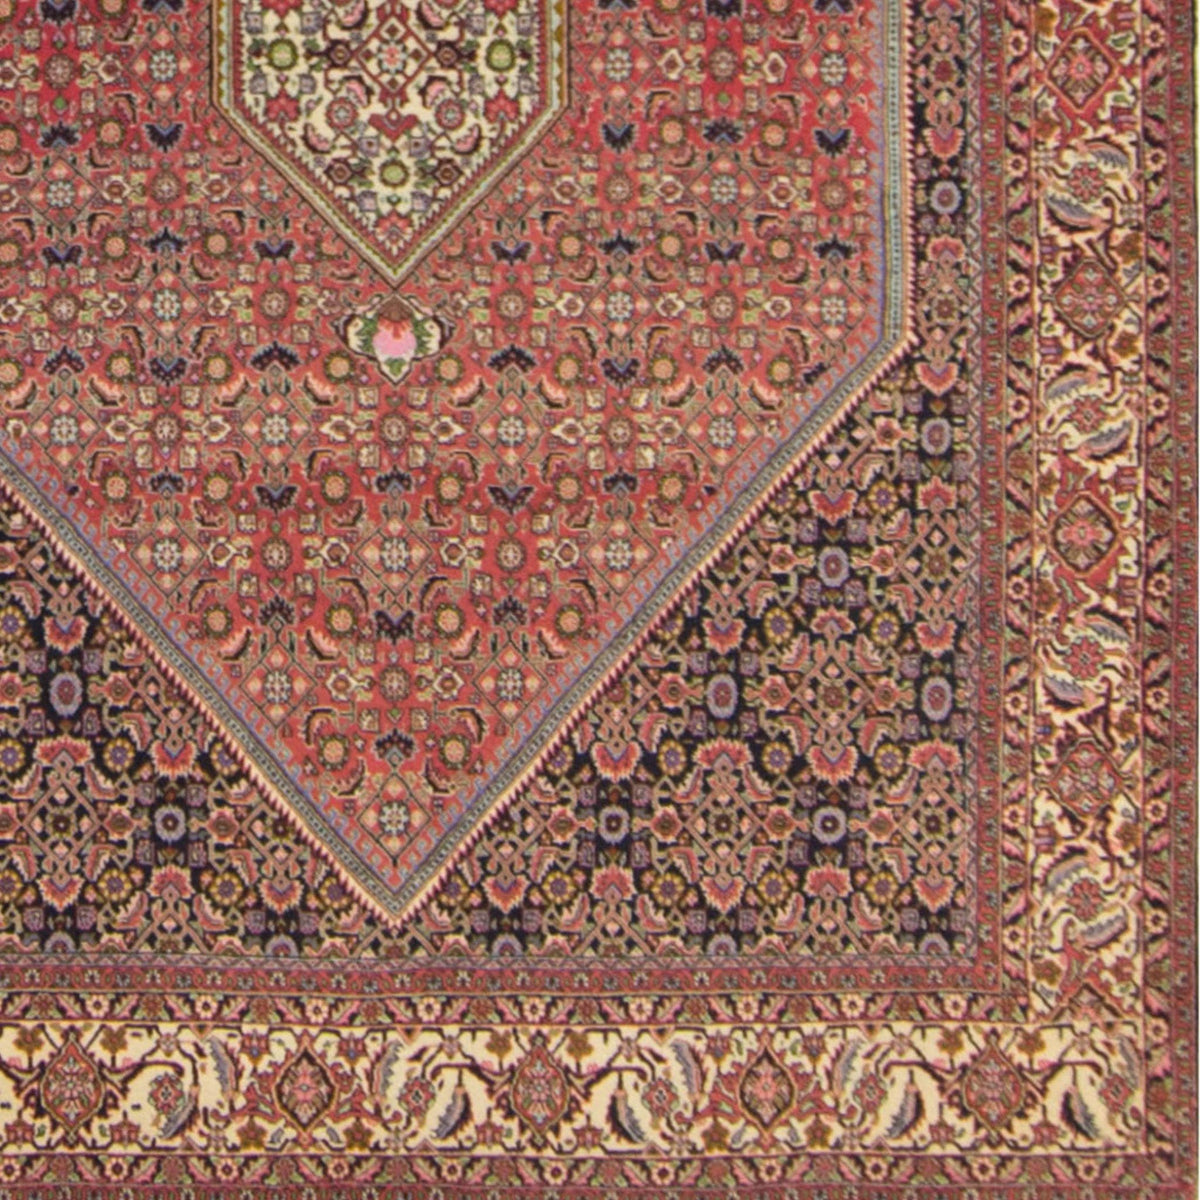 Super Fine Hand-knotted Wool Bijar Persian Rug 205cm x 297cm